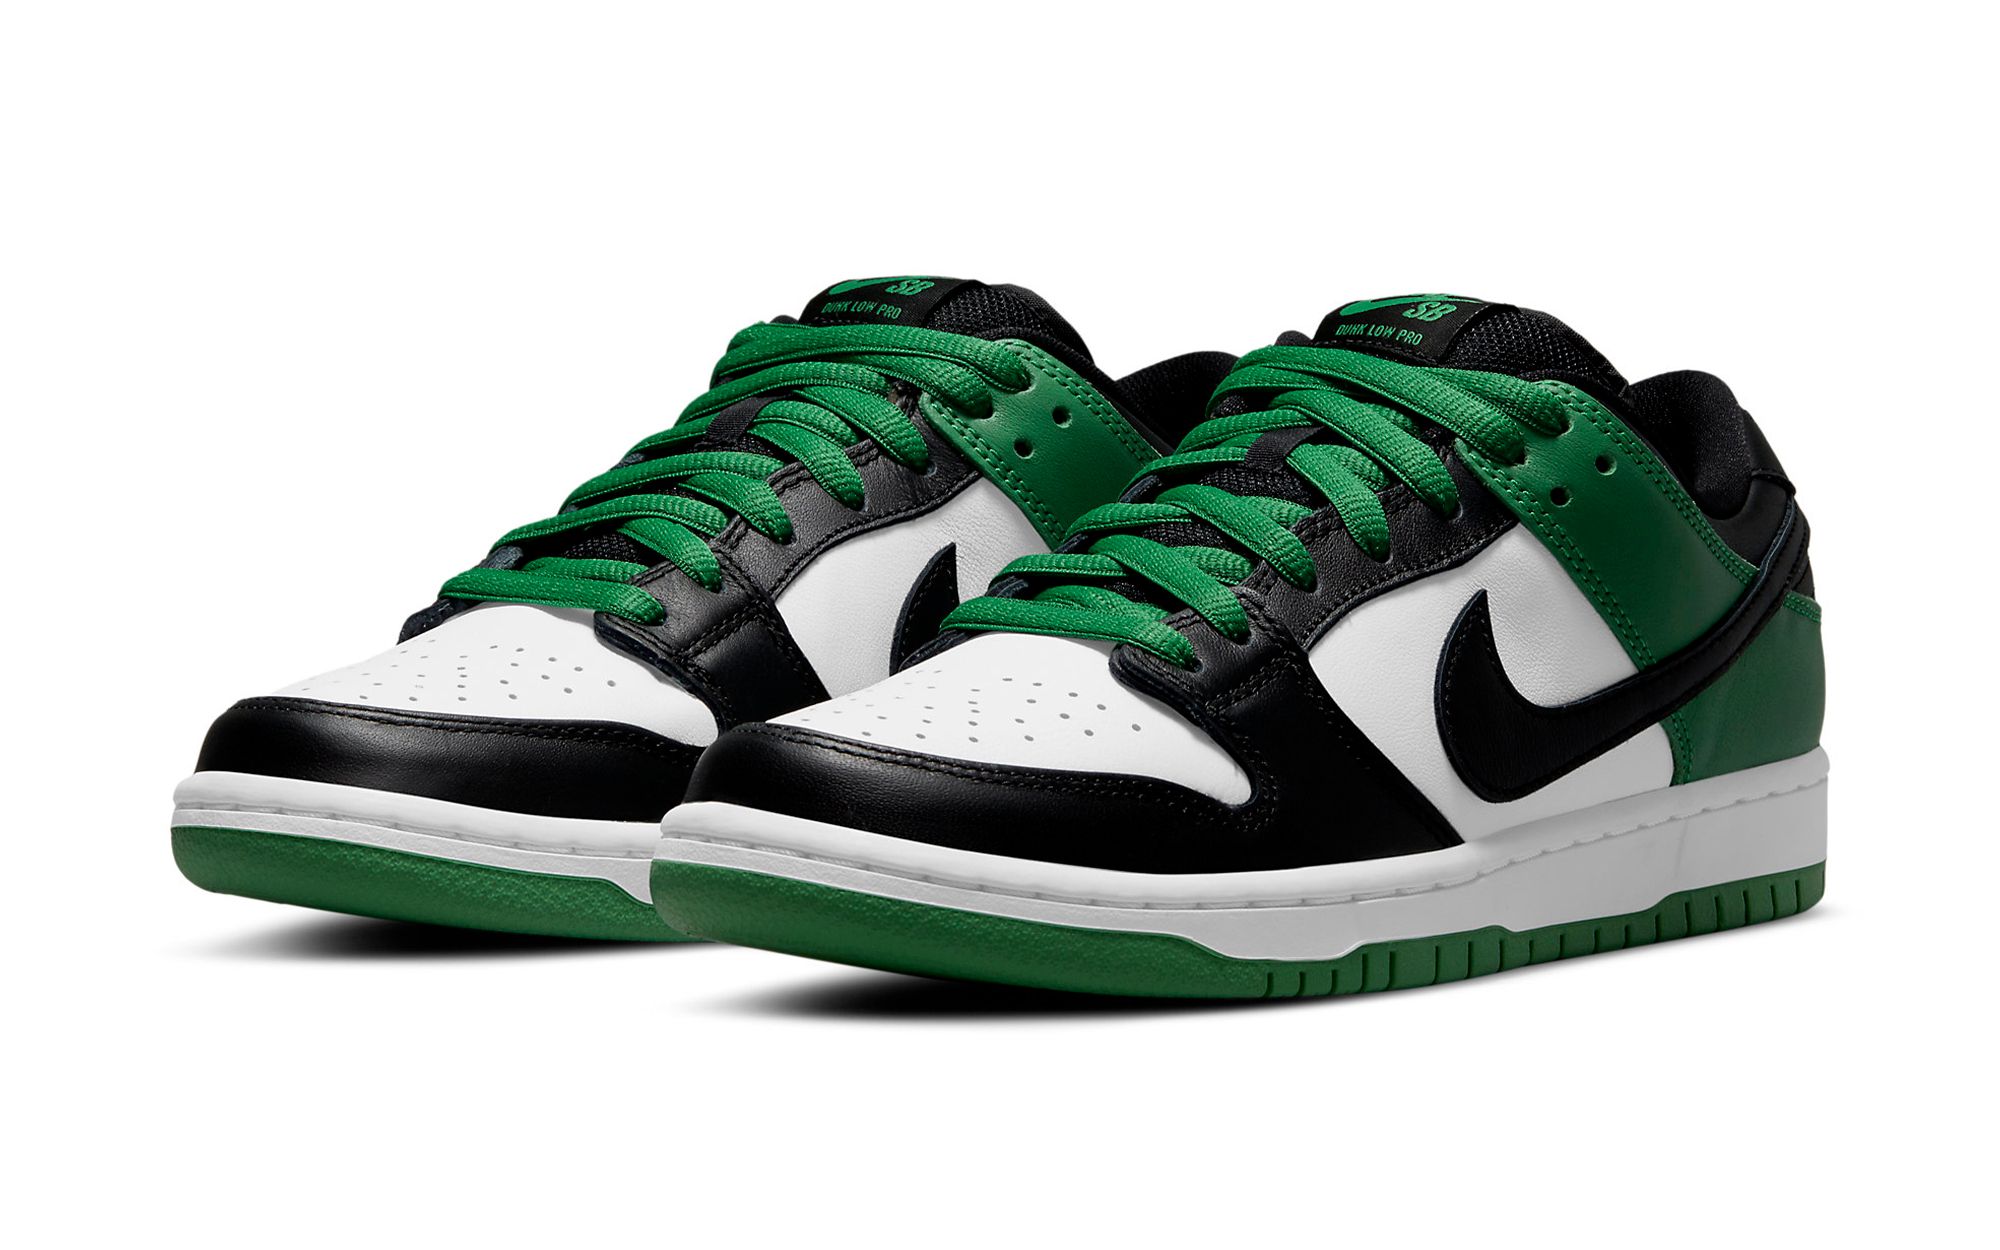 The Nike SB Dunk Low “Celtics